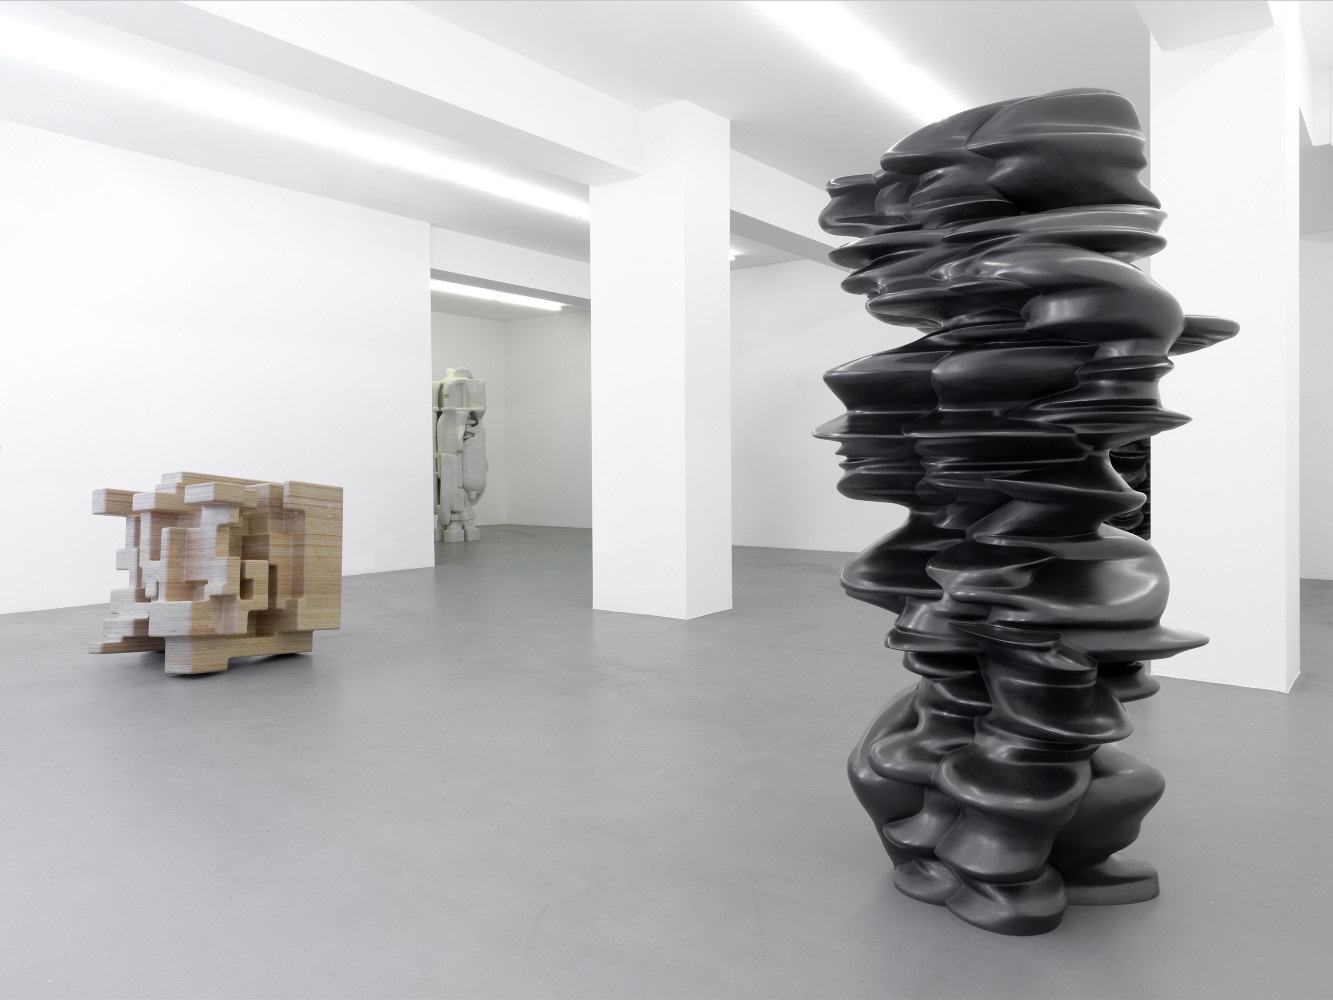 Installationsansicht, Buchmann Galerie, 2011